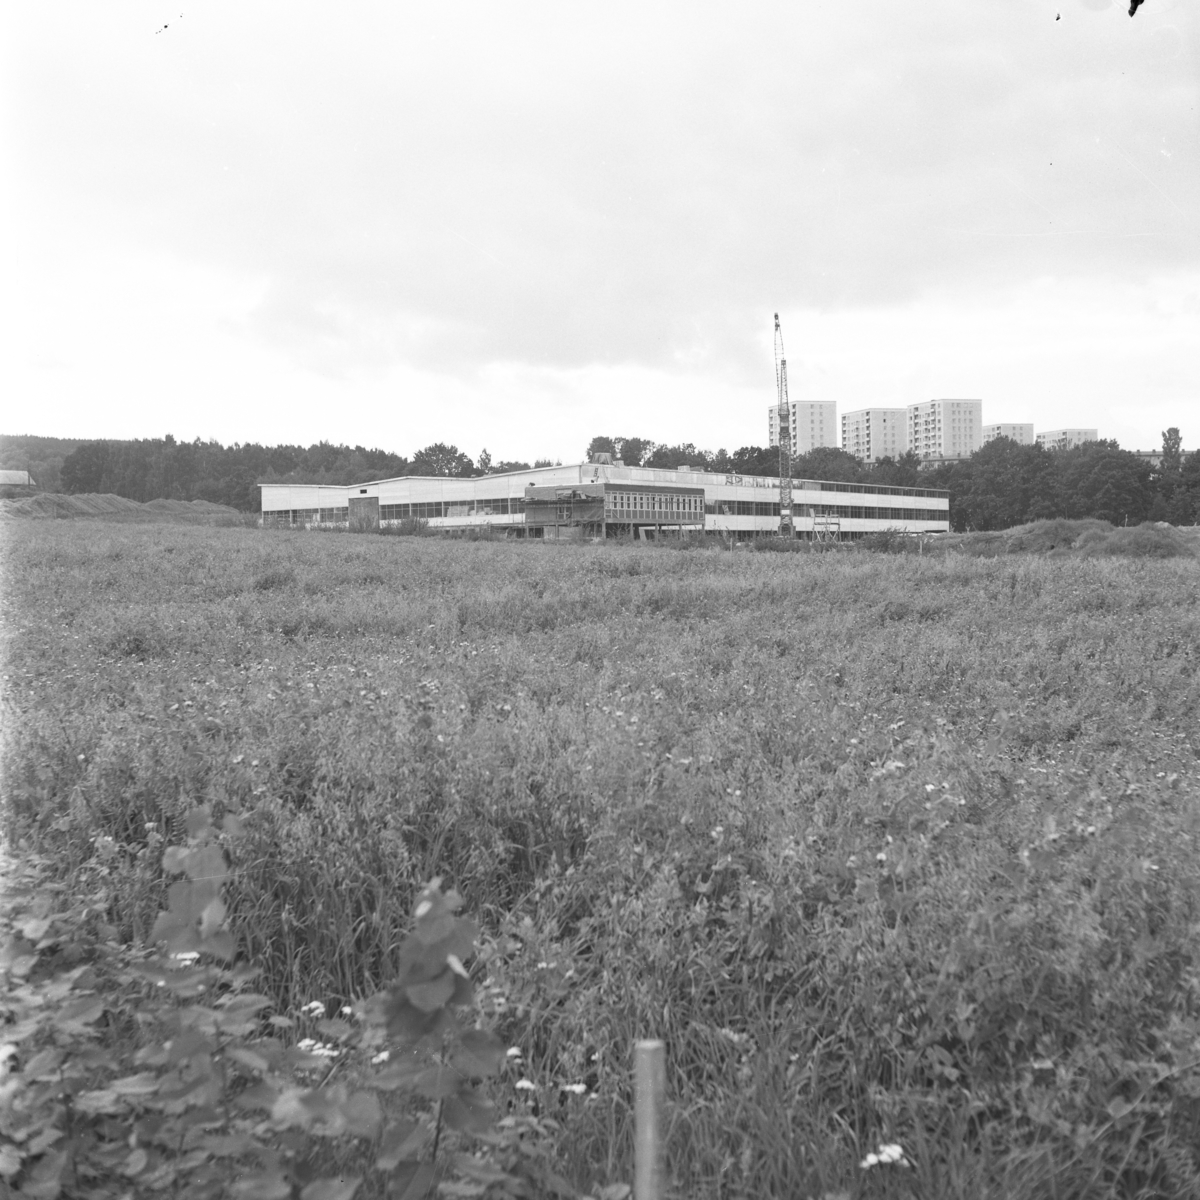 Utmed Birkagatan byggde Junekarosserier AB en stor industrilokal år 1963. Företaget tillverkade karosser för mindre lastbilar och husvagnar. Nybyggnaden låg alldeles intill gränsen mellan Jönköping och Huskvarna kommuner, innan sammanslagningen år 1971.